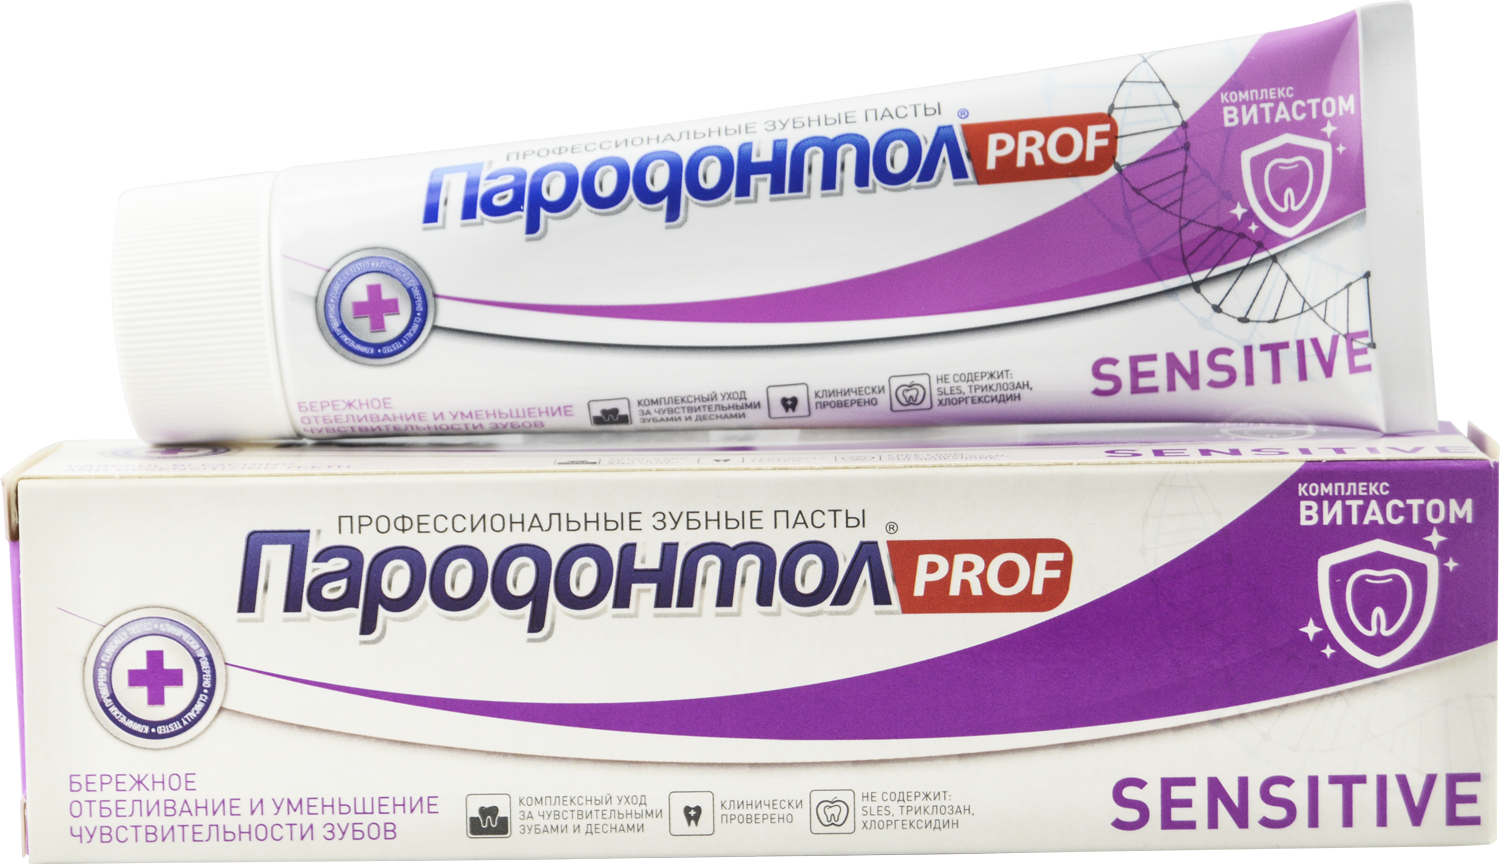 Зубная паста "Пародонтол" ("Parodontol") PROF Sensitive